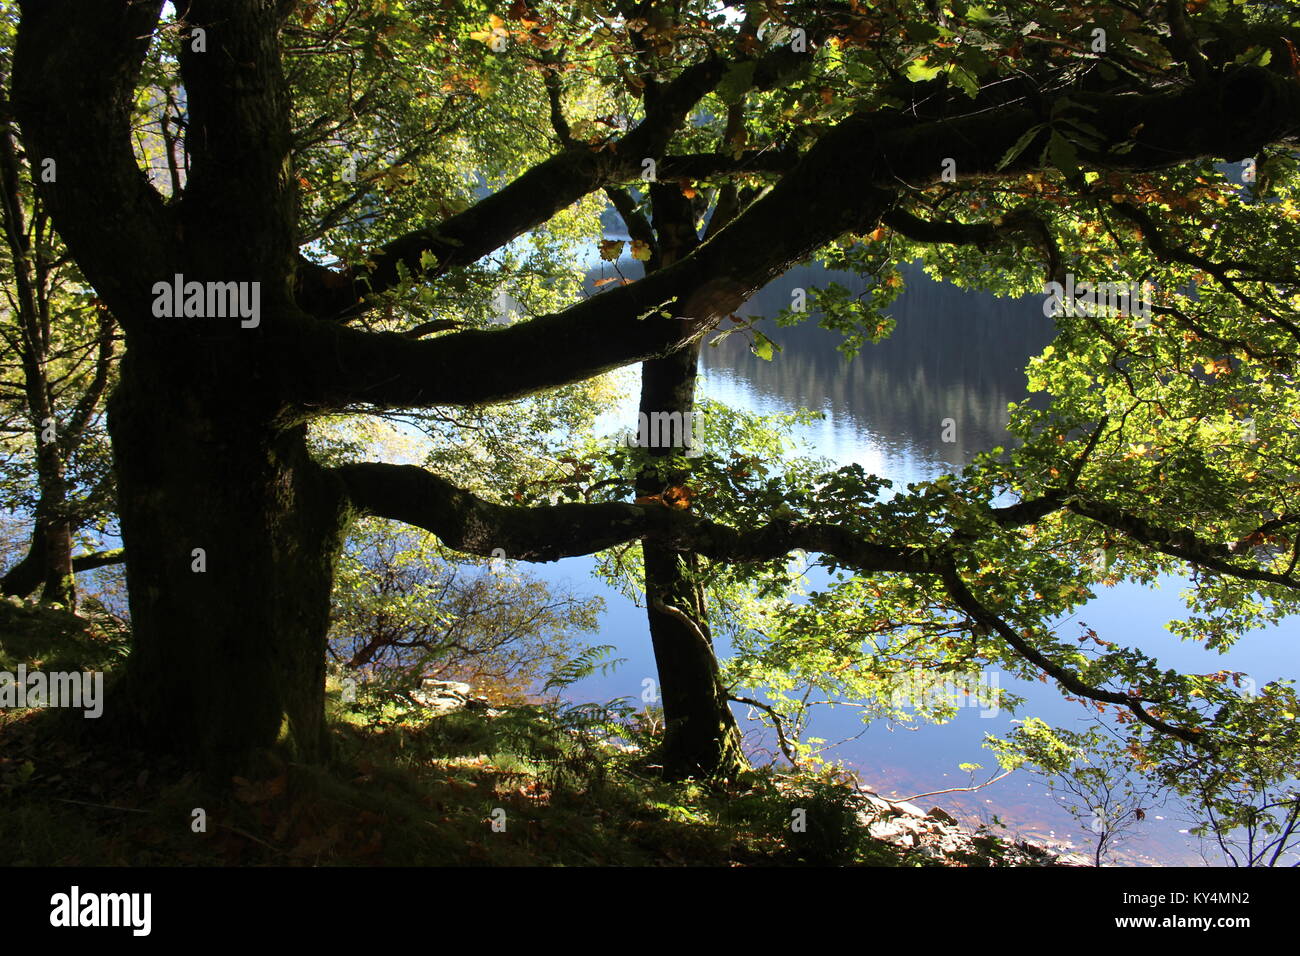 Silueta de árbol en octubre de sol con agua detrás, Garreg Ddu embalse Valle de Elan, Powys, Gales, tomada desde el sendero que bordea el embalse Foto de stock